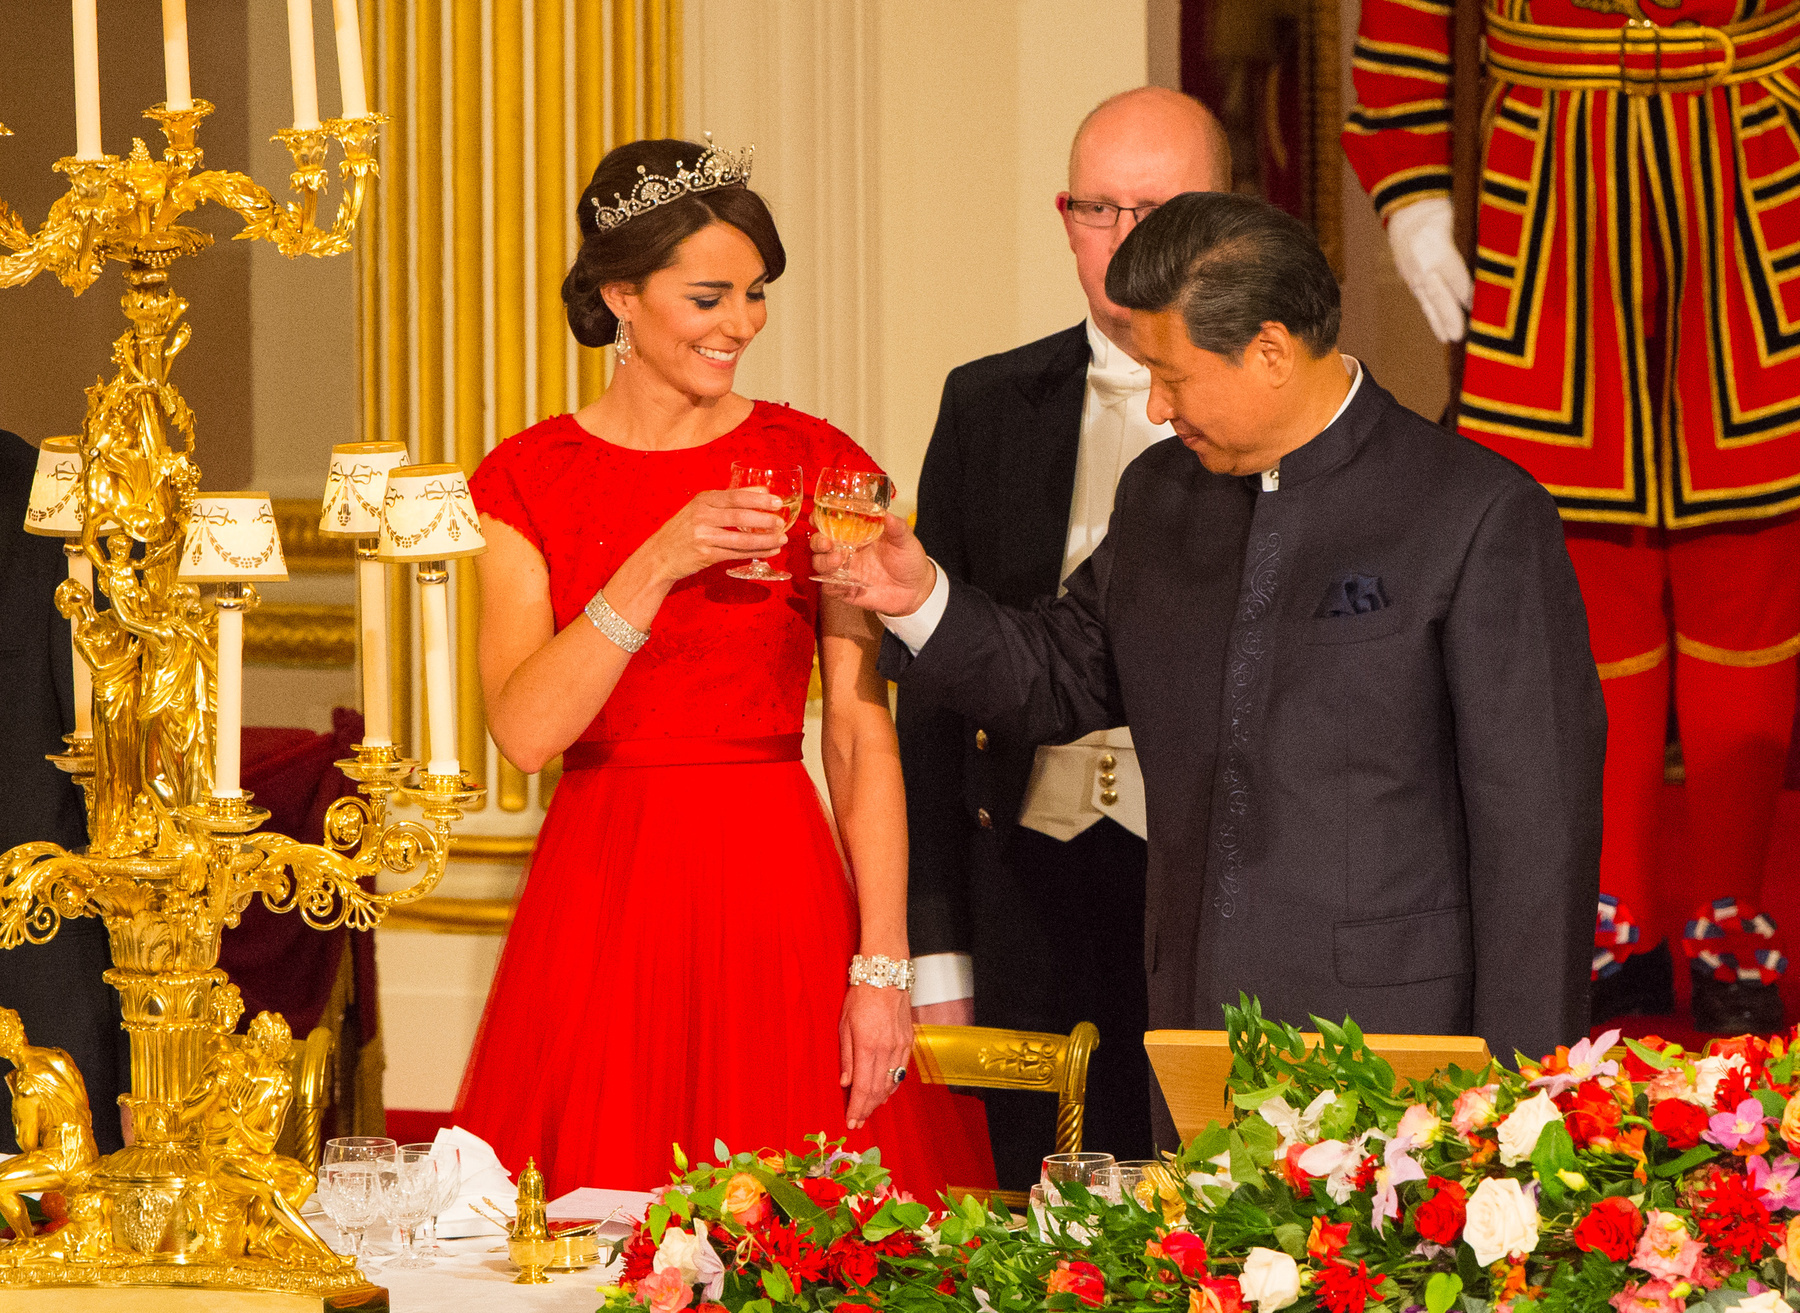 Katalin hercegné 2015 októberében viselte a Lótuszvirág tiarát a Buckingham-palotában.